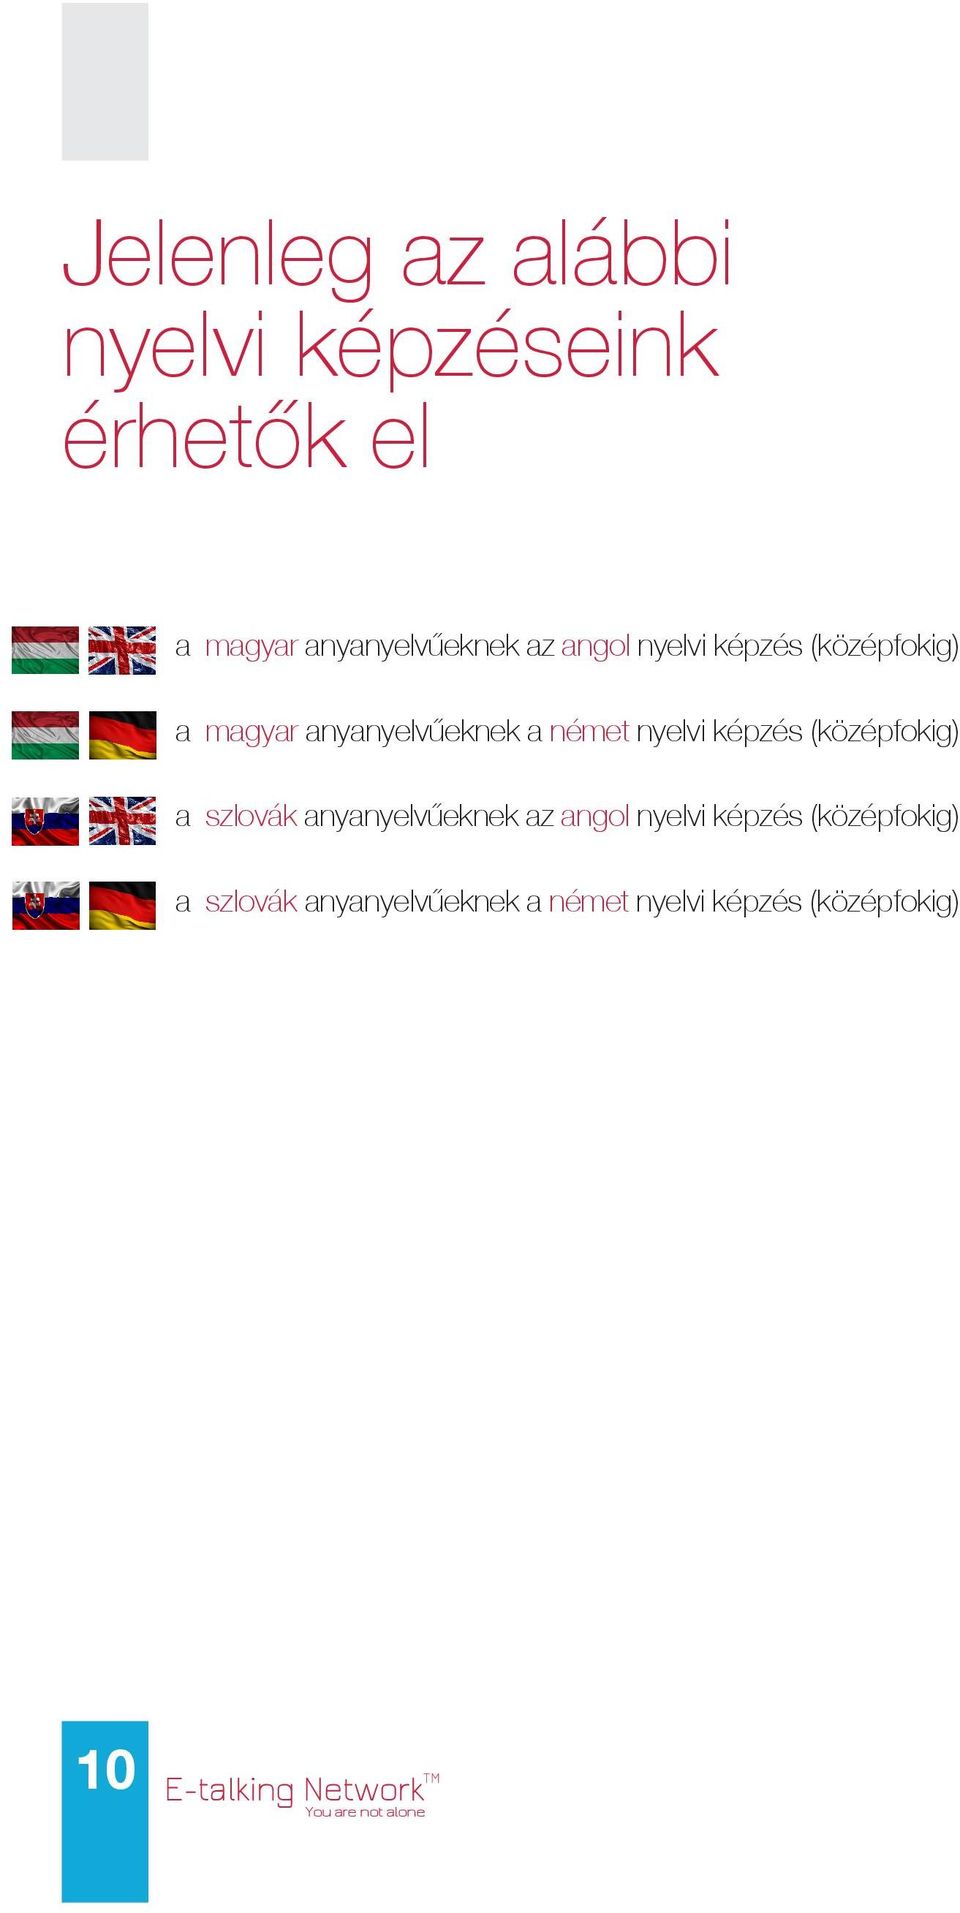 képzés (középfokig) a szlovák anyanyelvűeknek az angol nyelvi képzés